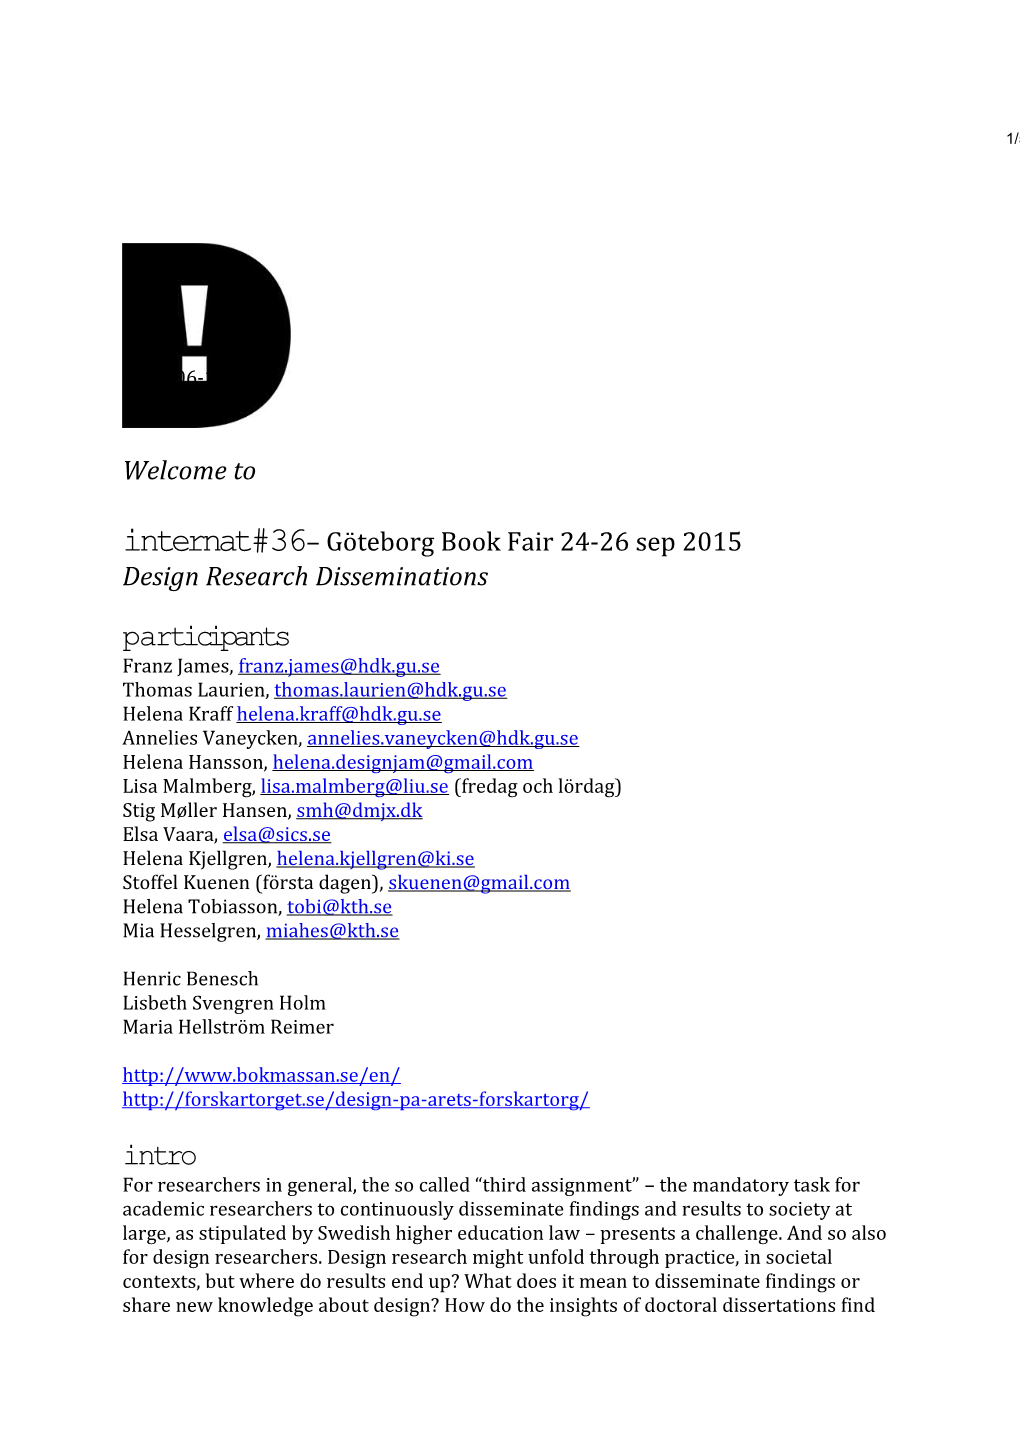 Internat #36 Göteborg Book Fair 24-26 Sep 2015